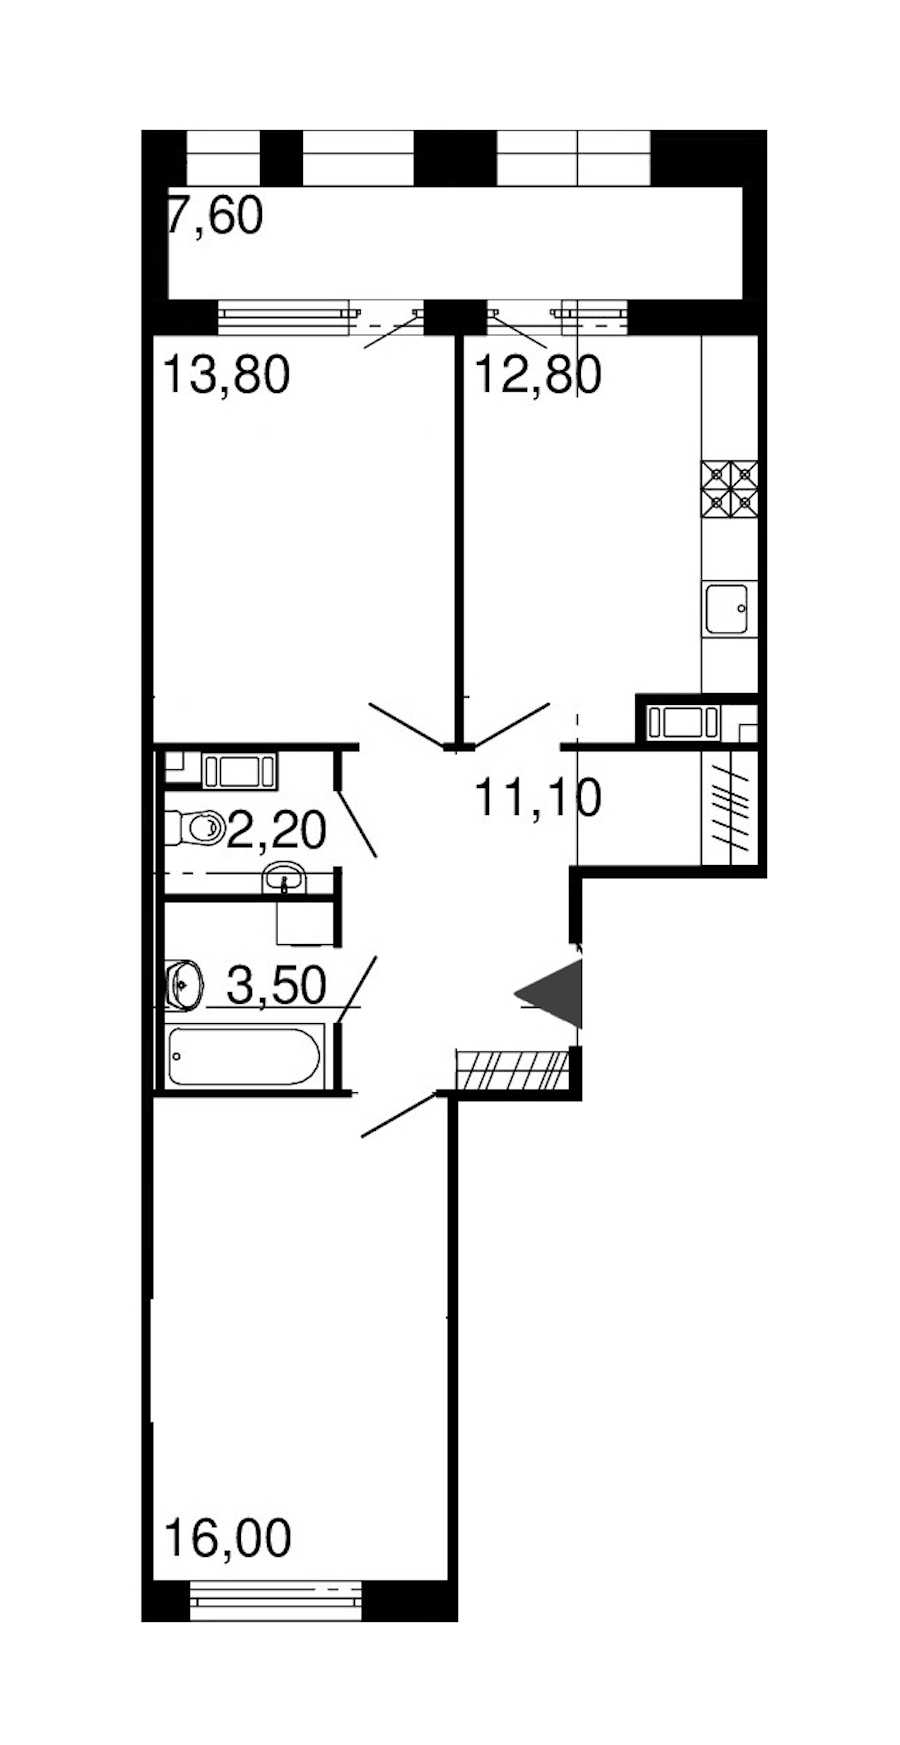 Двухкомнатная квартира в : площадь 59.4 м2 , этаж: 8 – купить в Санкт-Петербурге